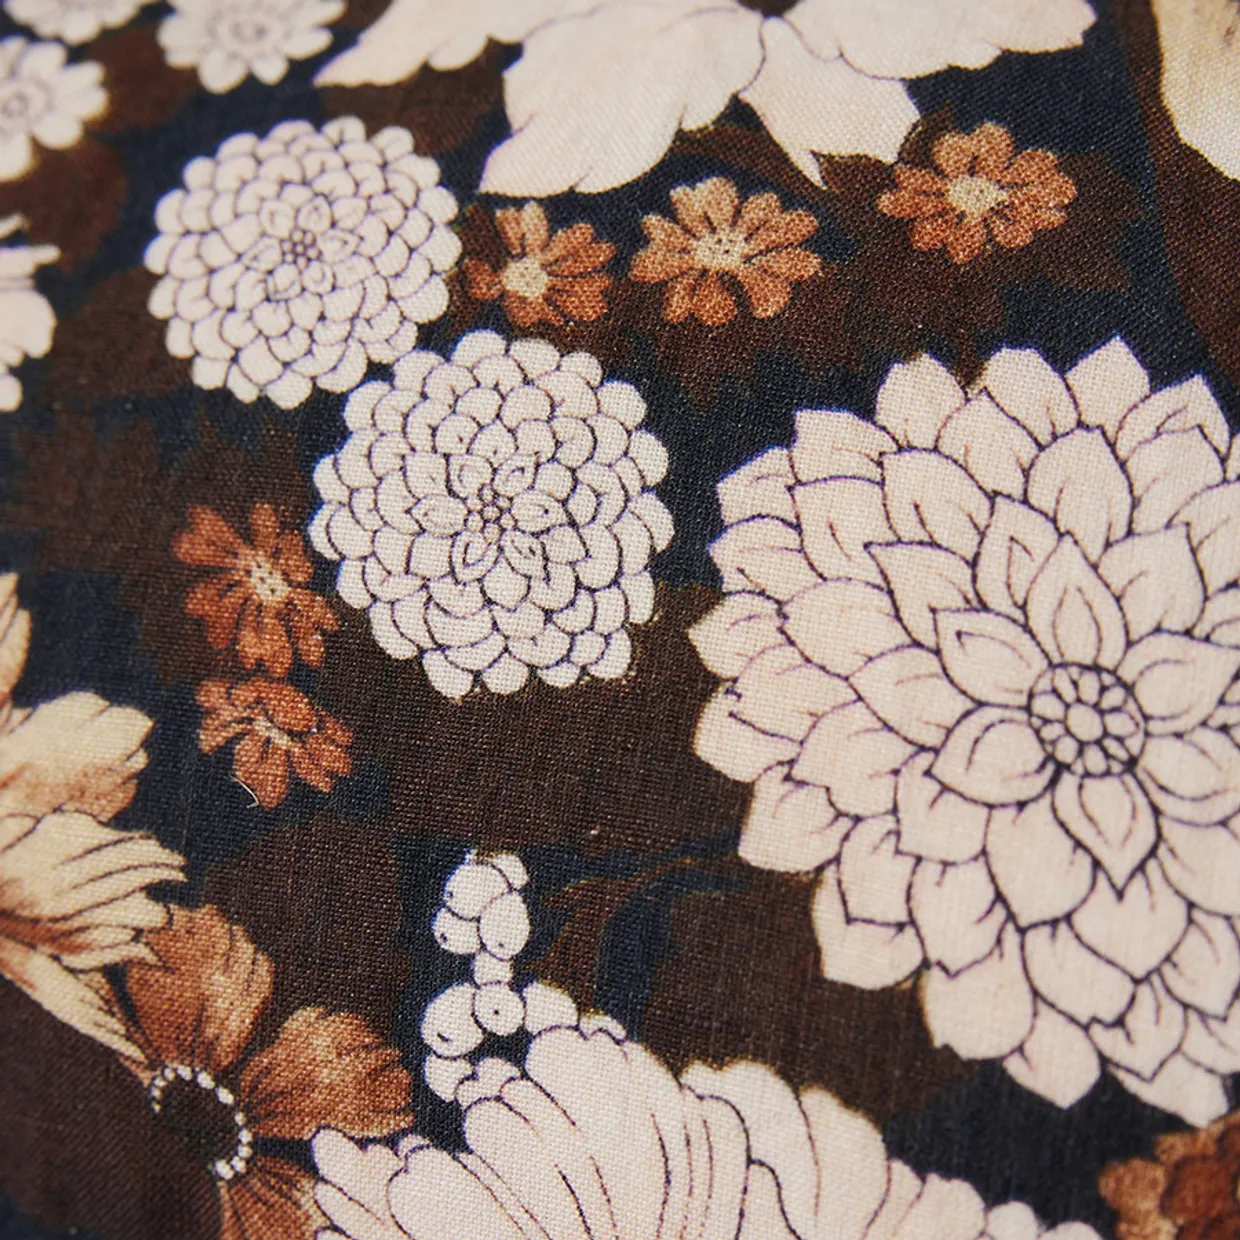 DORIS for HKLIVING: cushion floral (55x30cm)